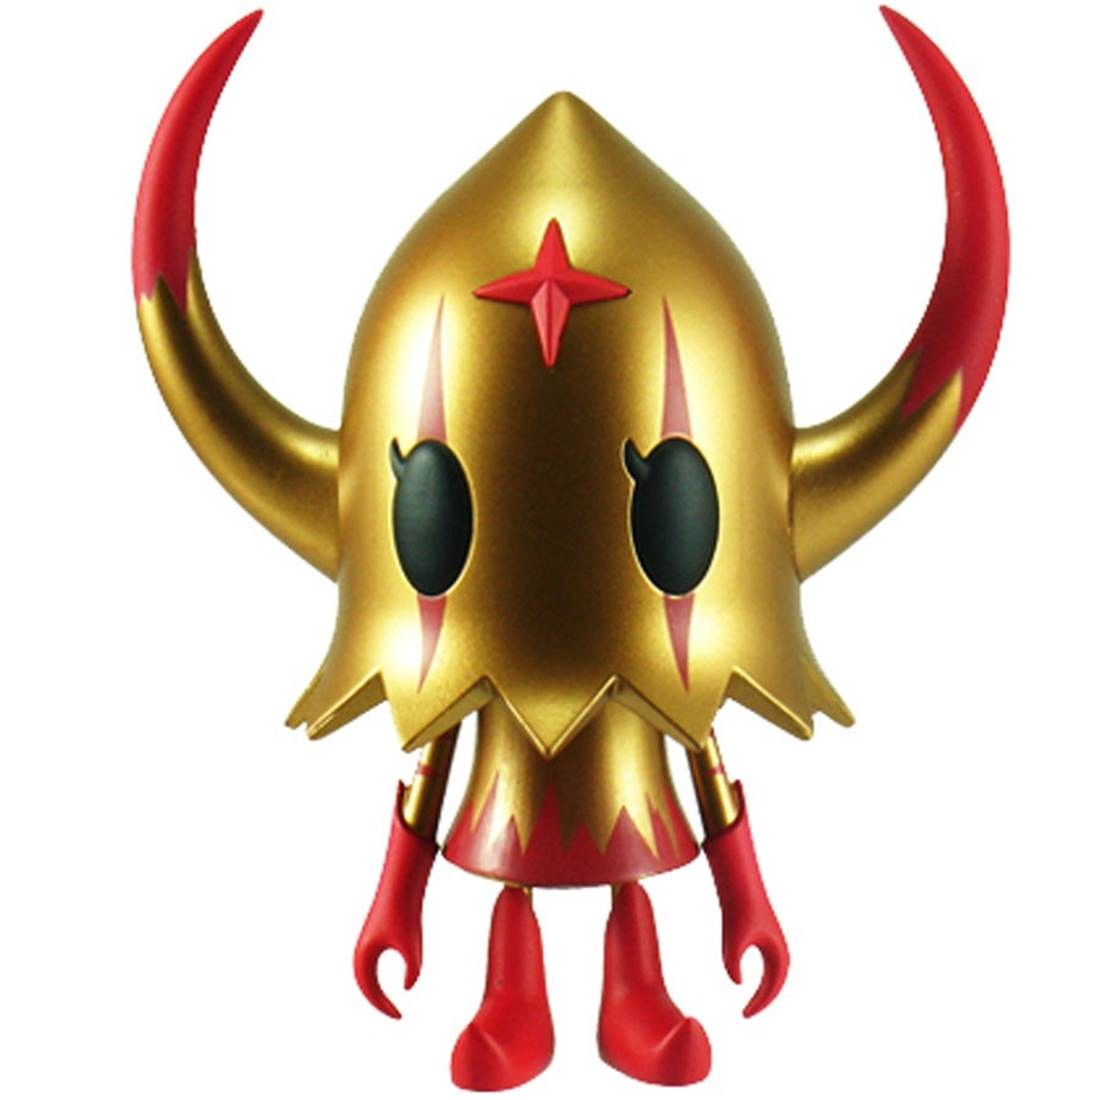 Devilrobots Evirob Figure (gold / red) - Cheap Cerbe Jordan Outlet SDCC Exclusive